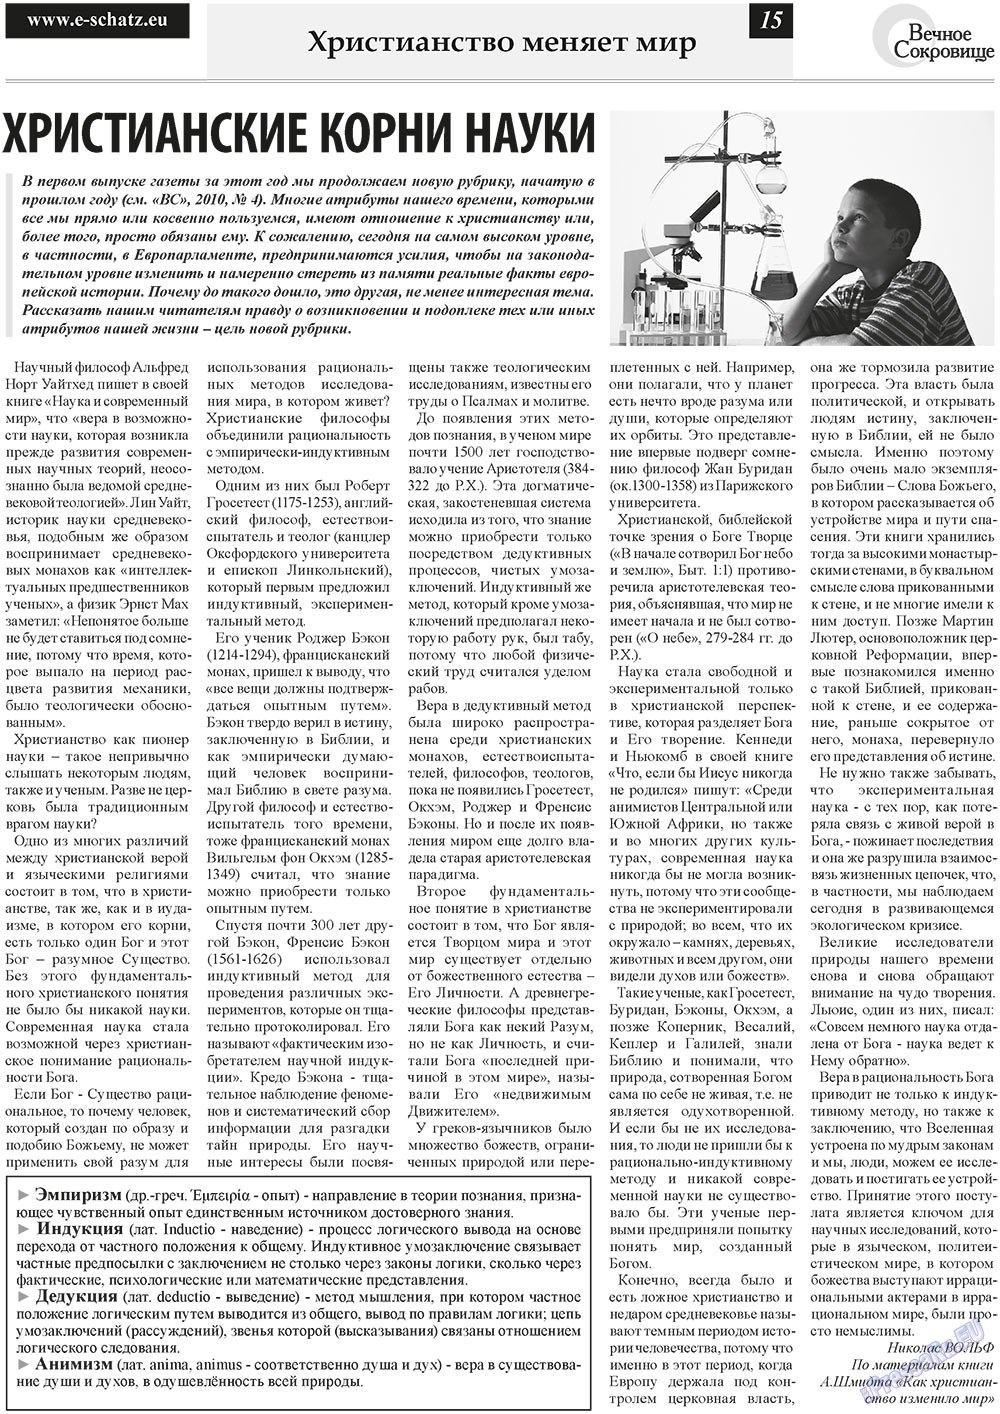 Вечное сокровище, газета. 2011 №1 стр.15